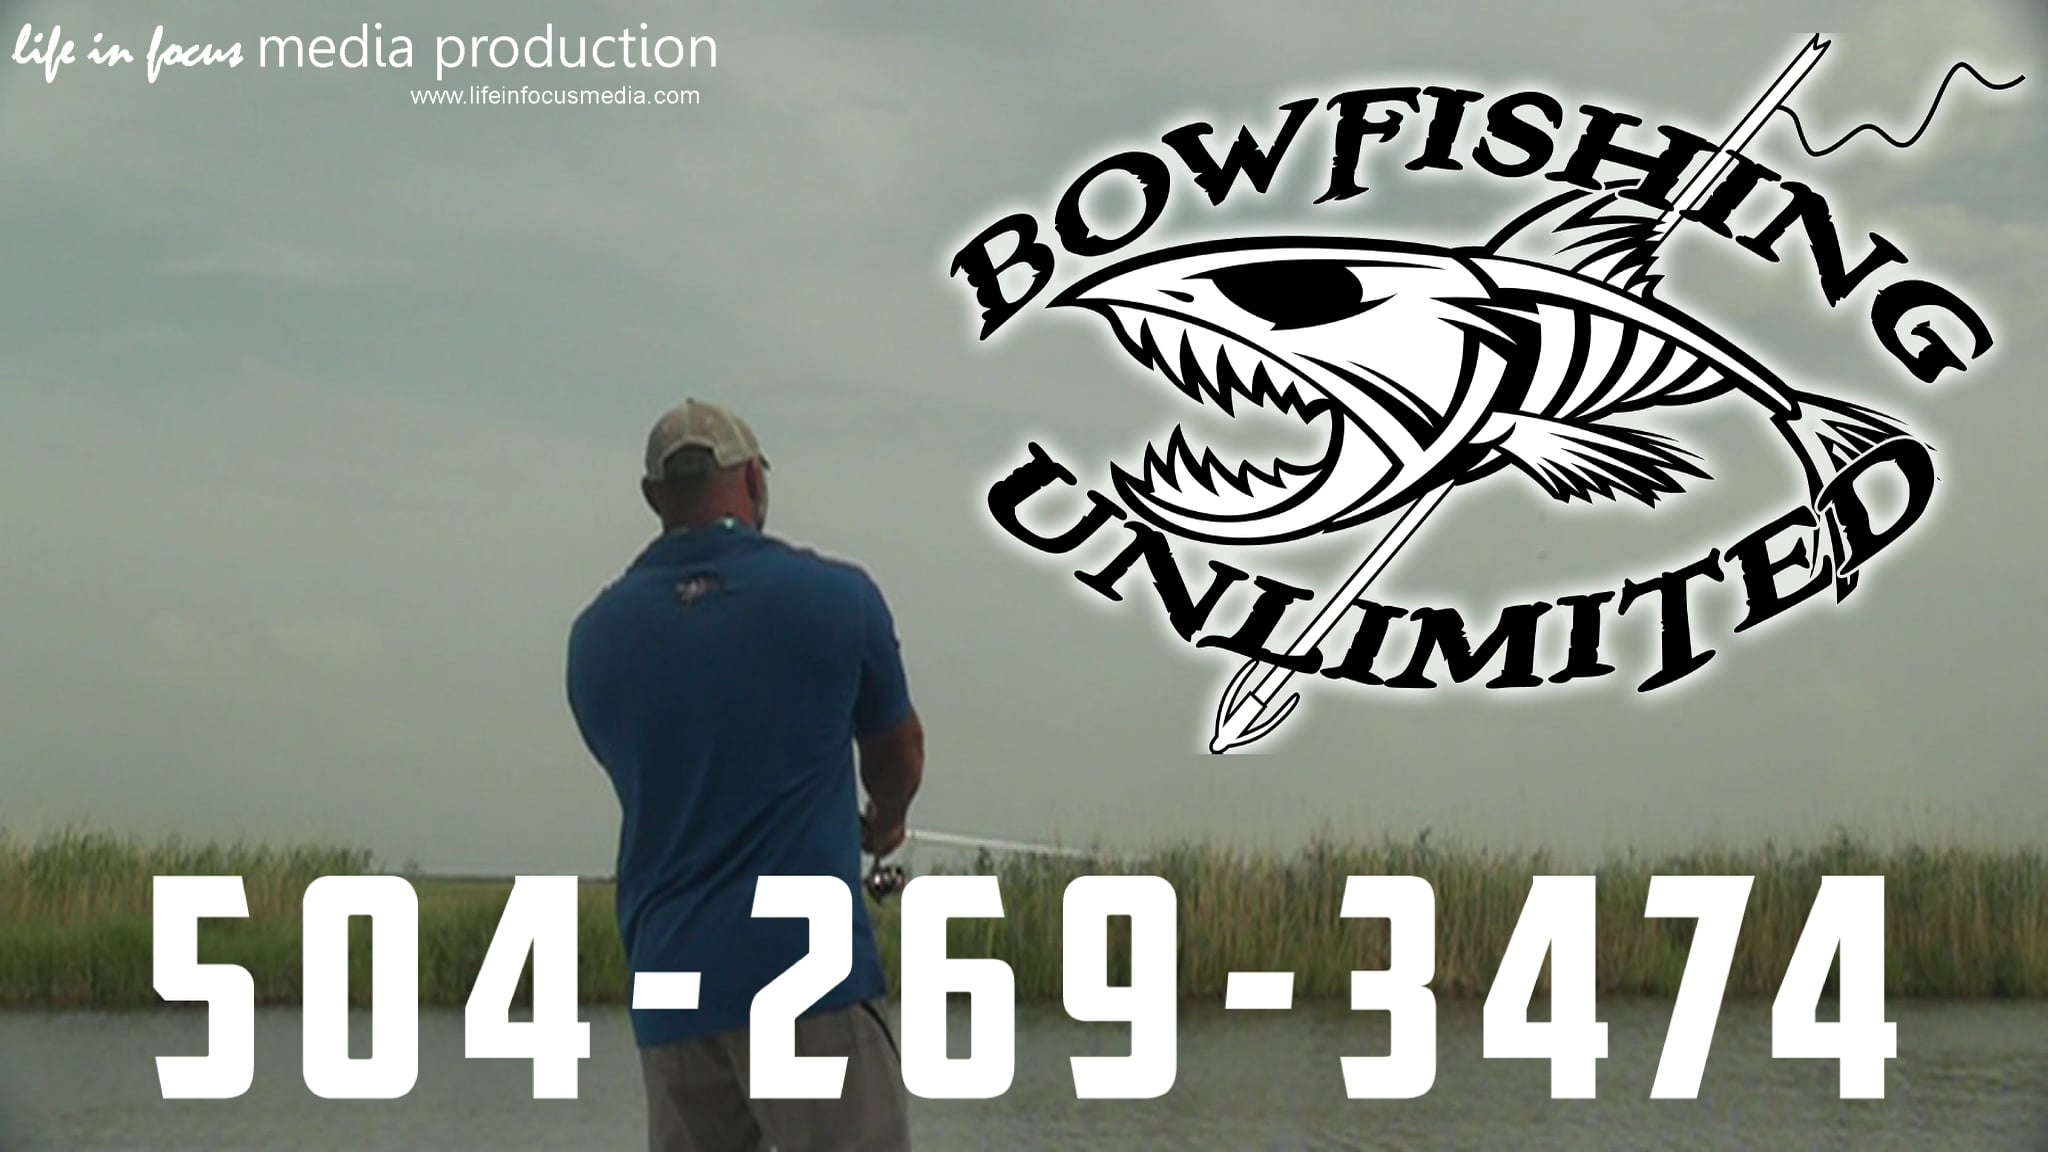 Bowfishing Unlimited Promo 1 on Vimeo